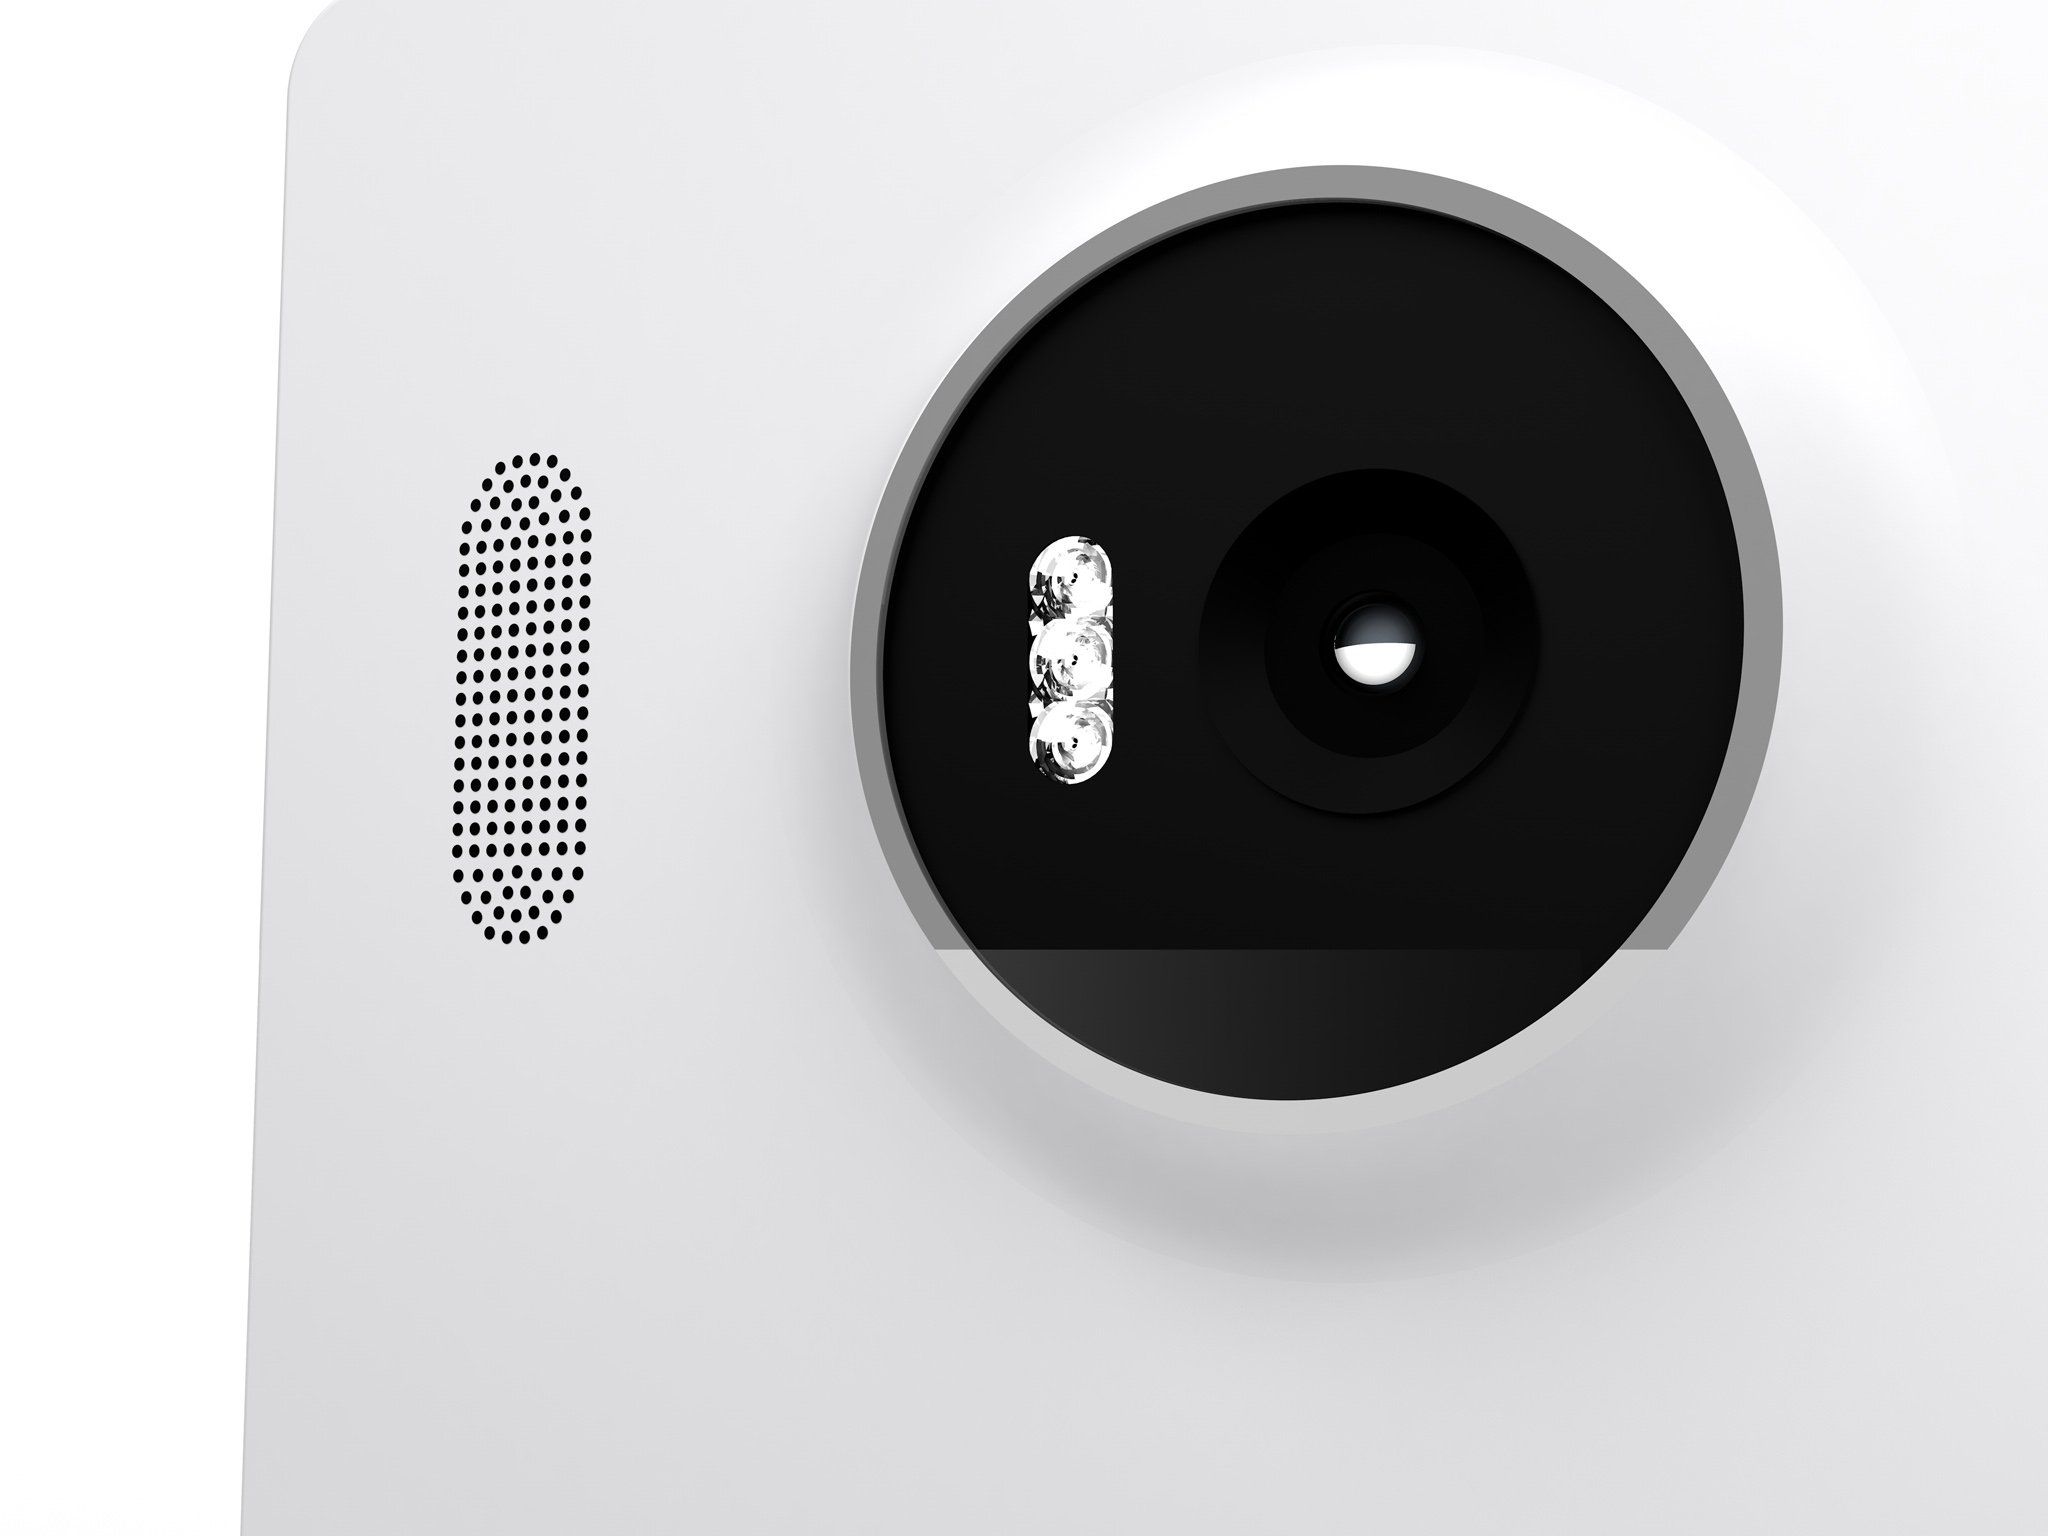 Lumia 950 XL Cityman camera